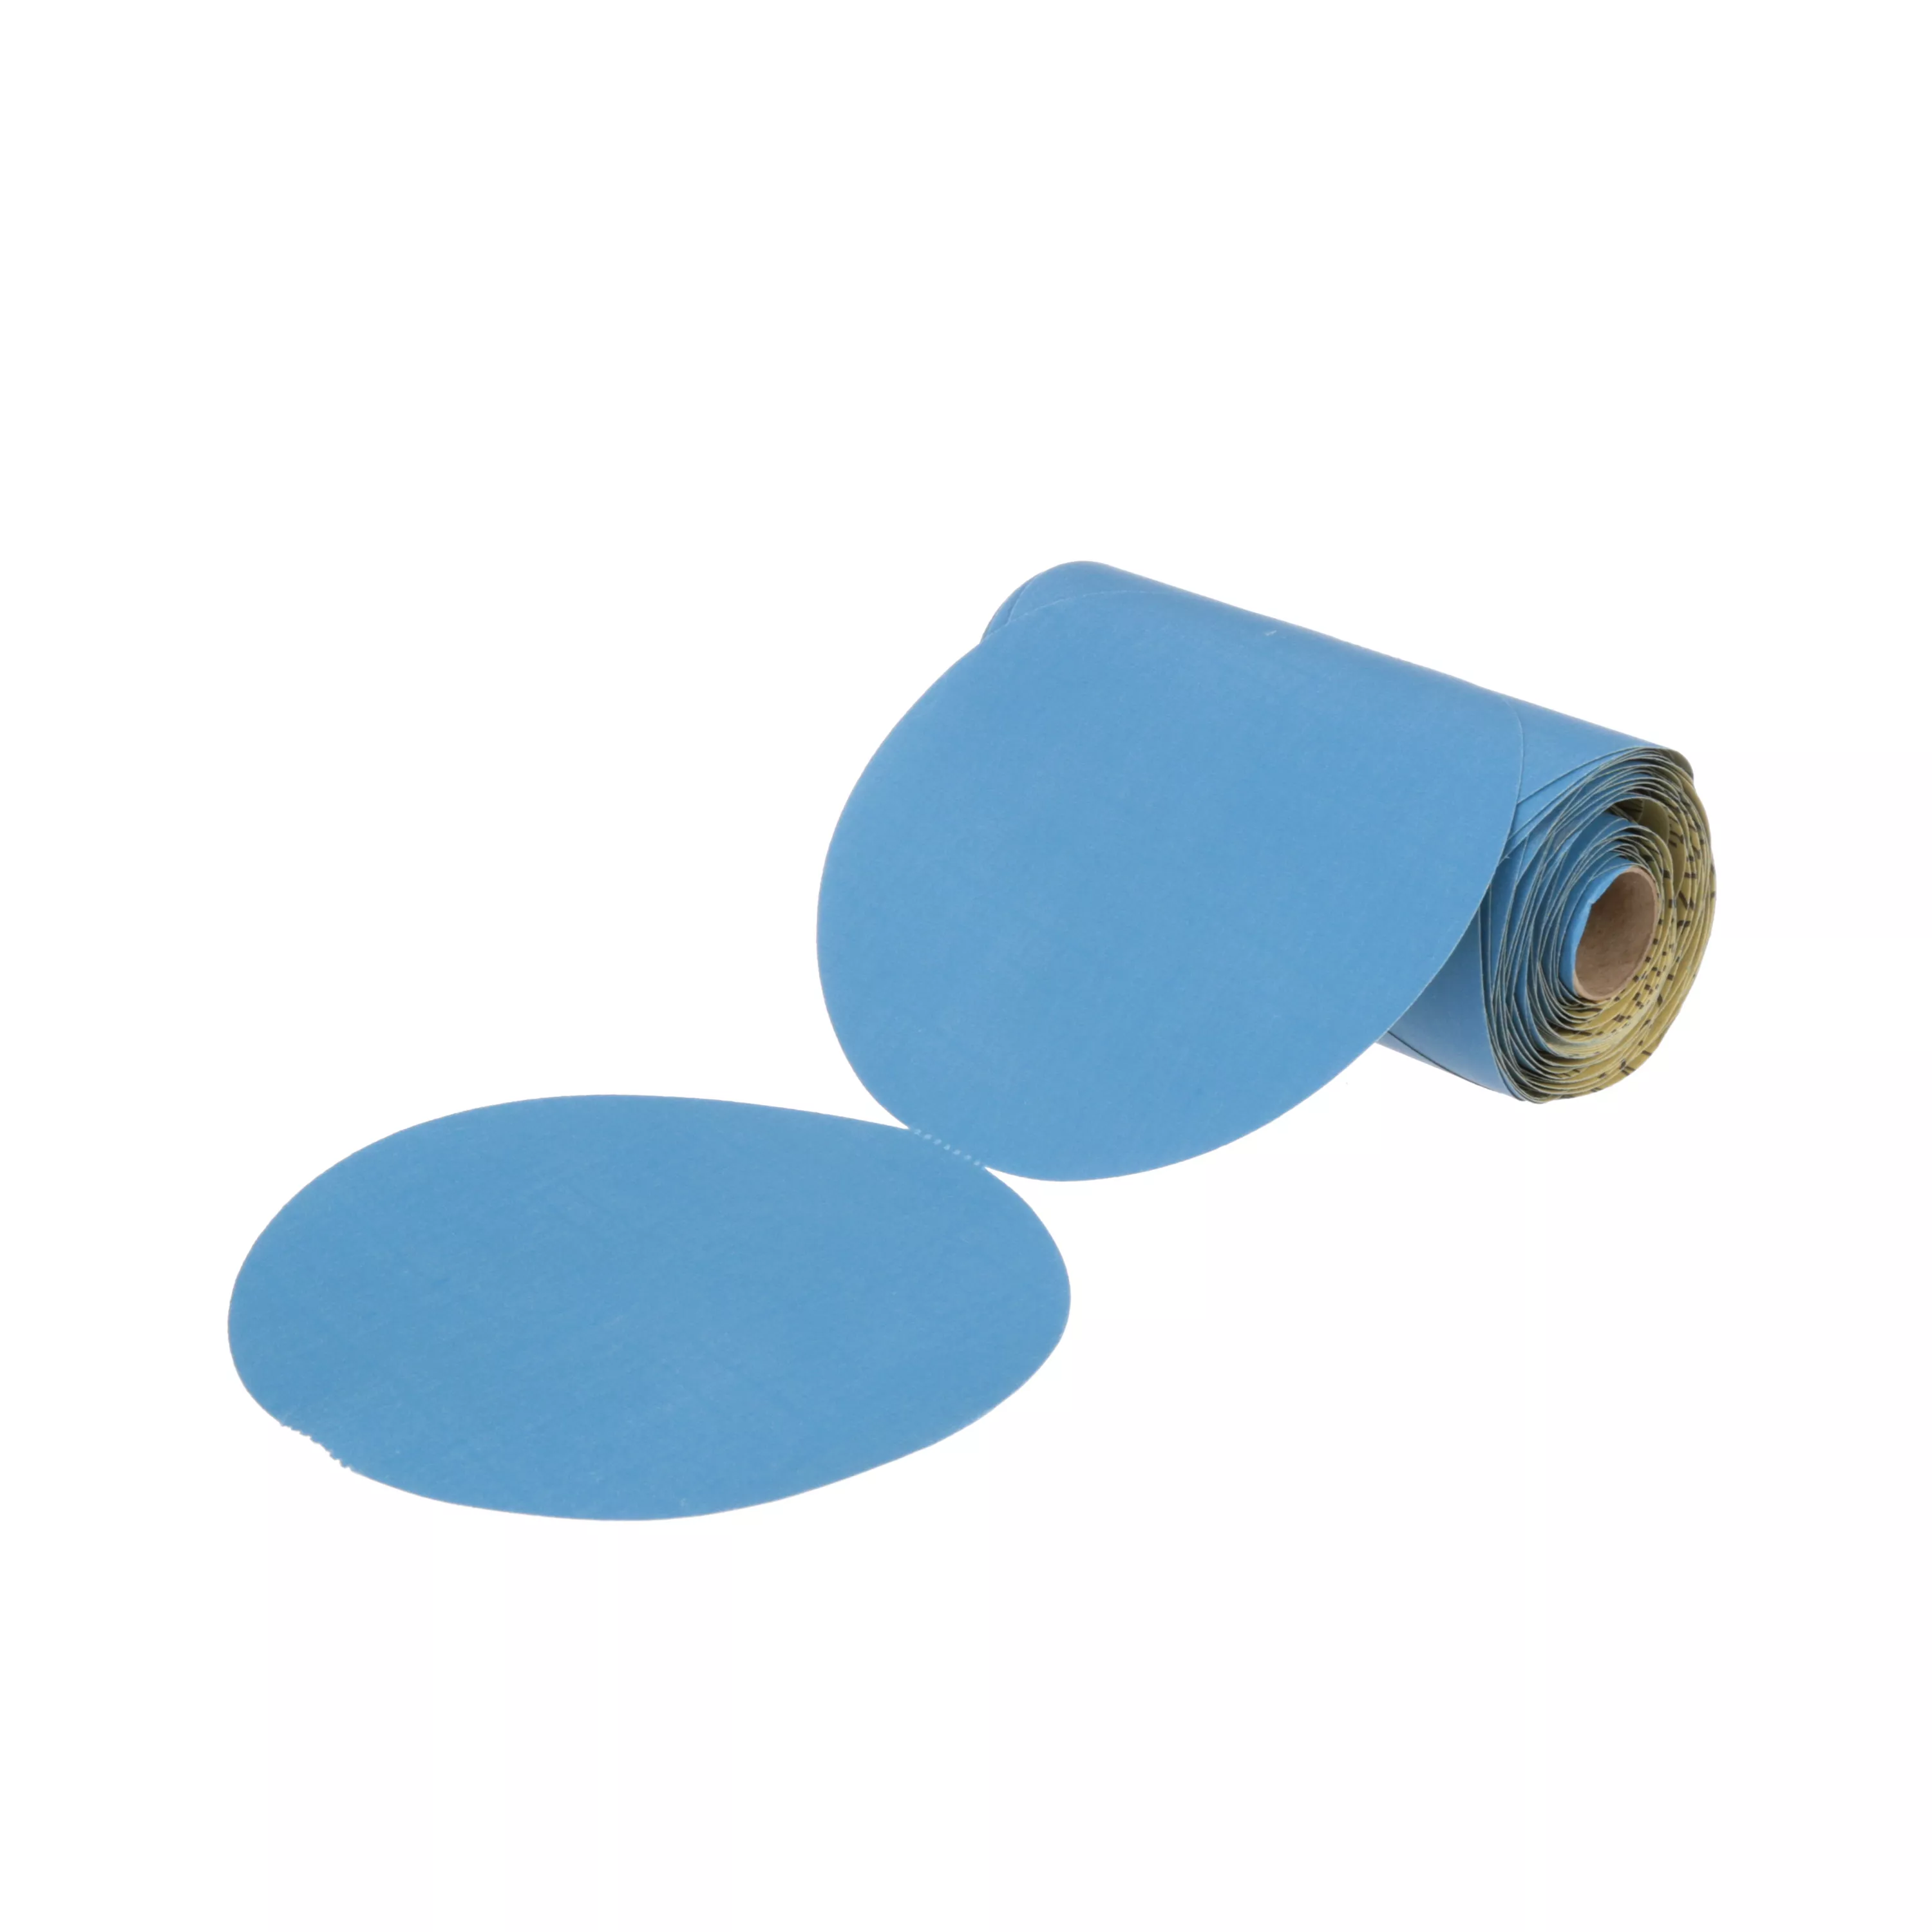 3M™ Stikit™ Blue Abrasive Disc Roll 36210, 6 in, 320 Grade, 100 Discs/Roll, 5 Rolls/Case